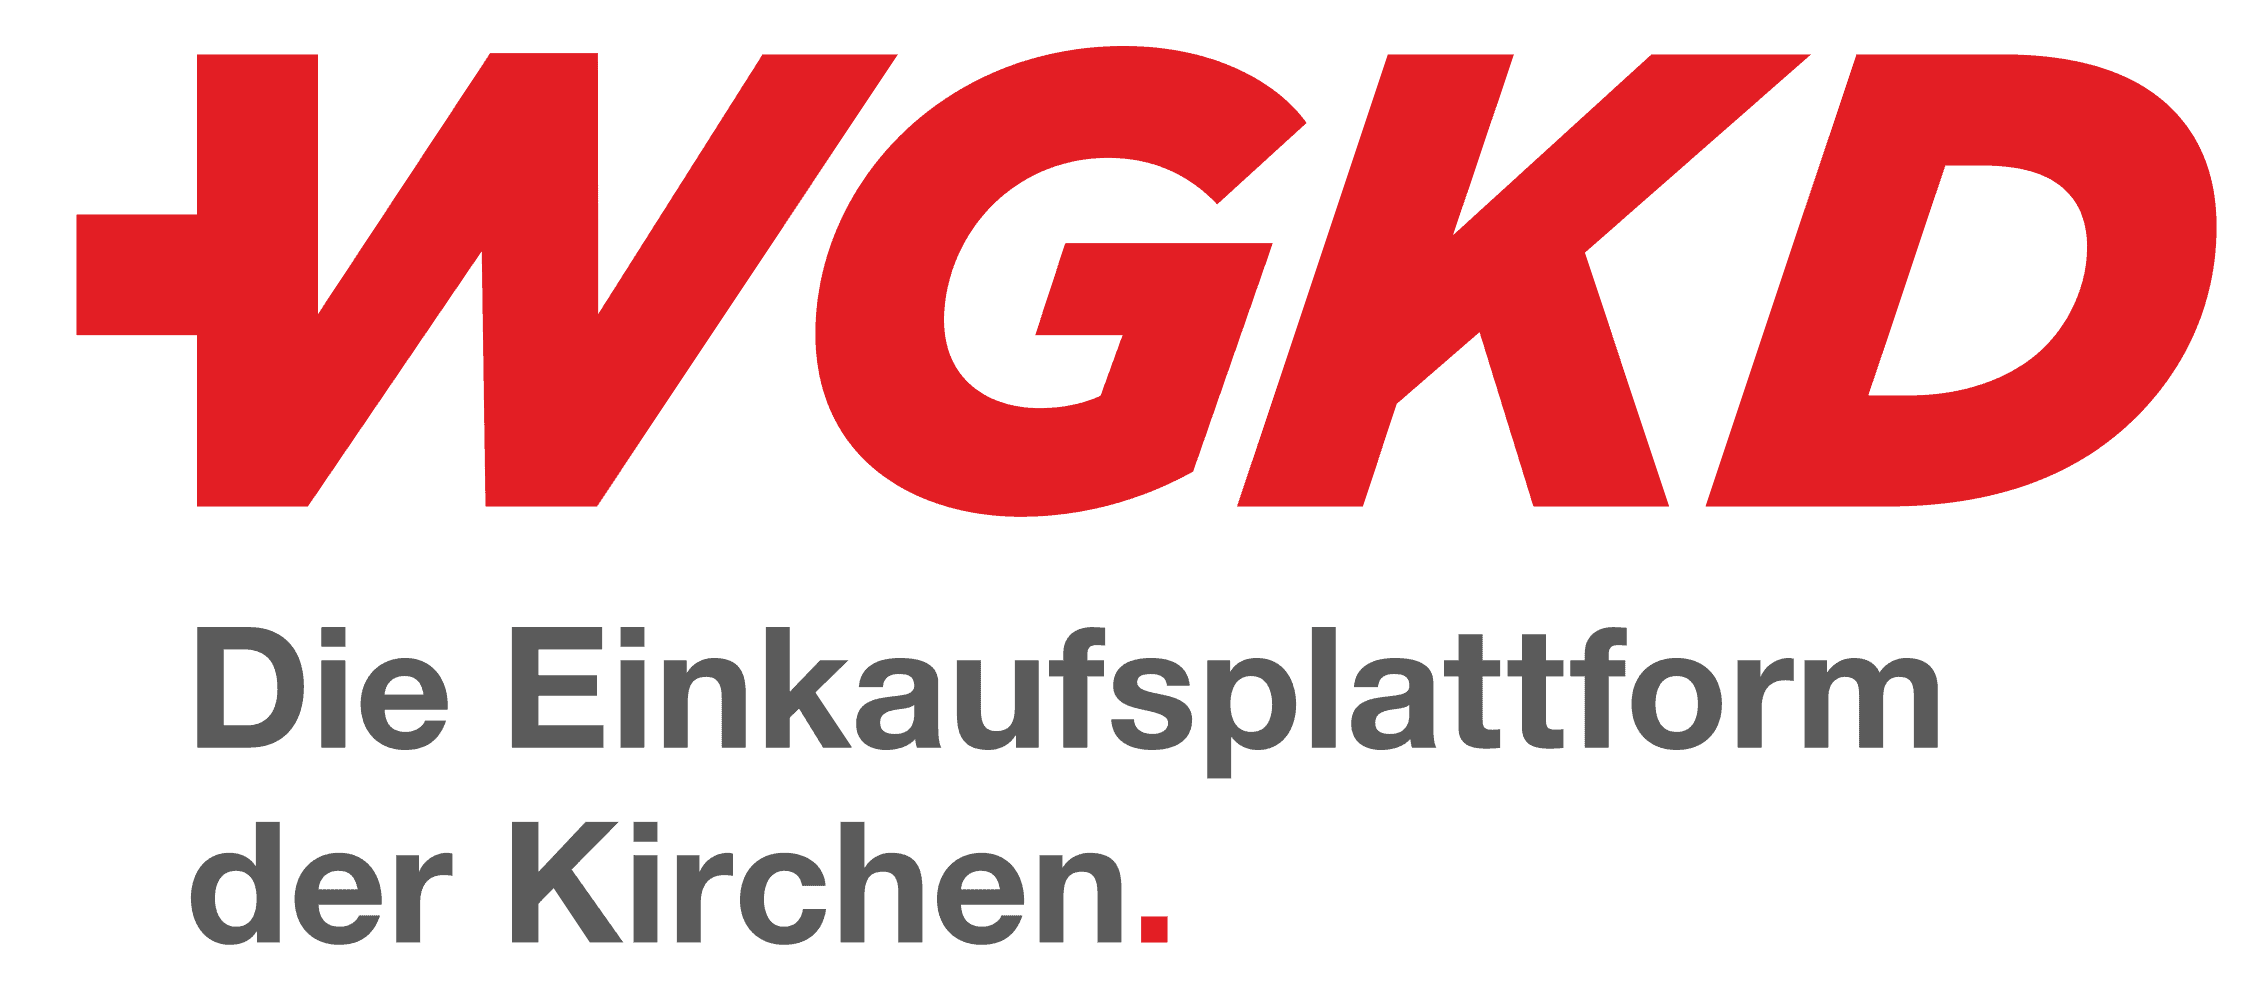 Logo WGKD Einkaufsplattform der Kirchen